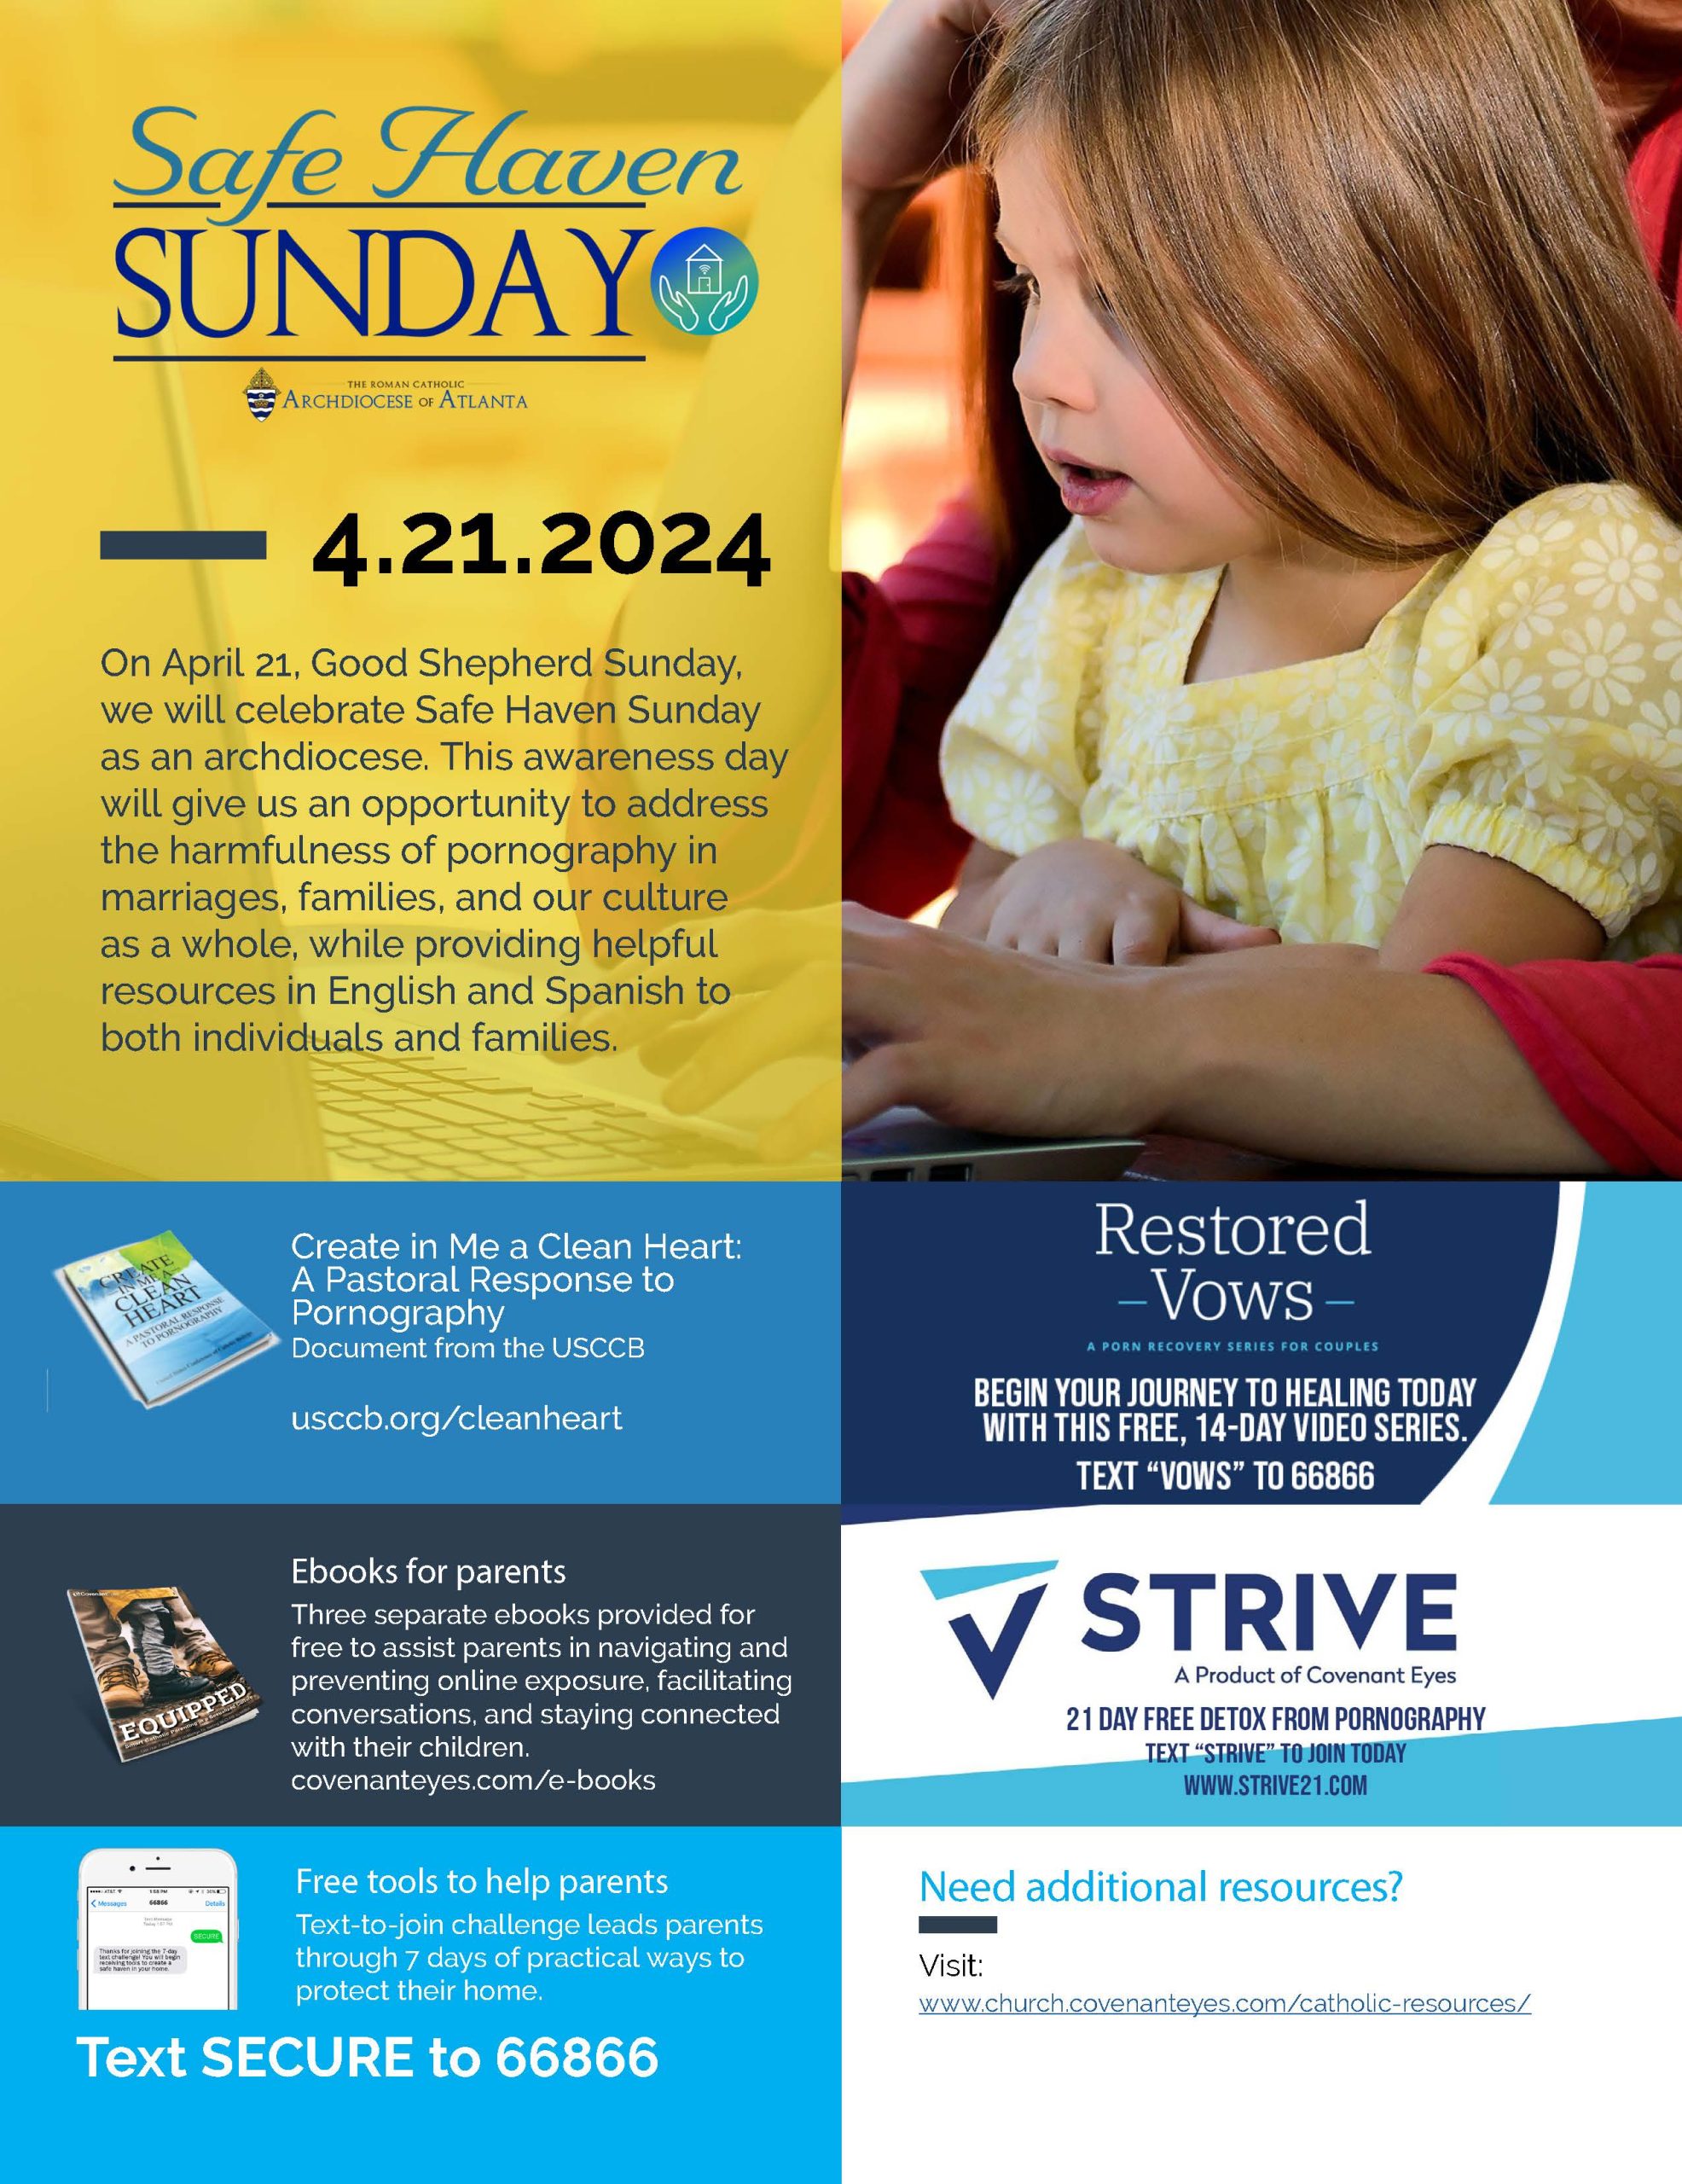 Safe Haven Sunday Details in Flyer below